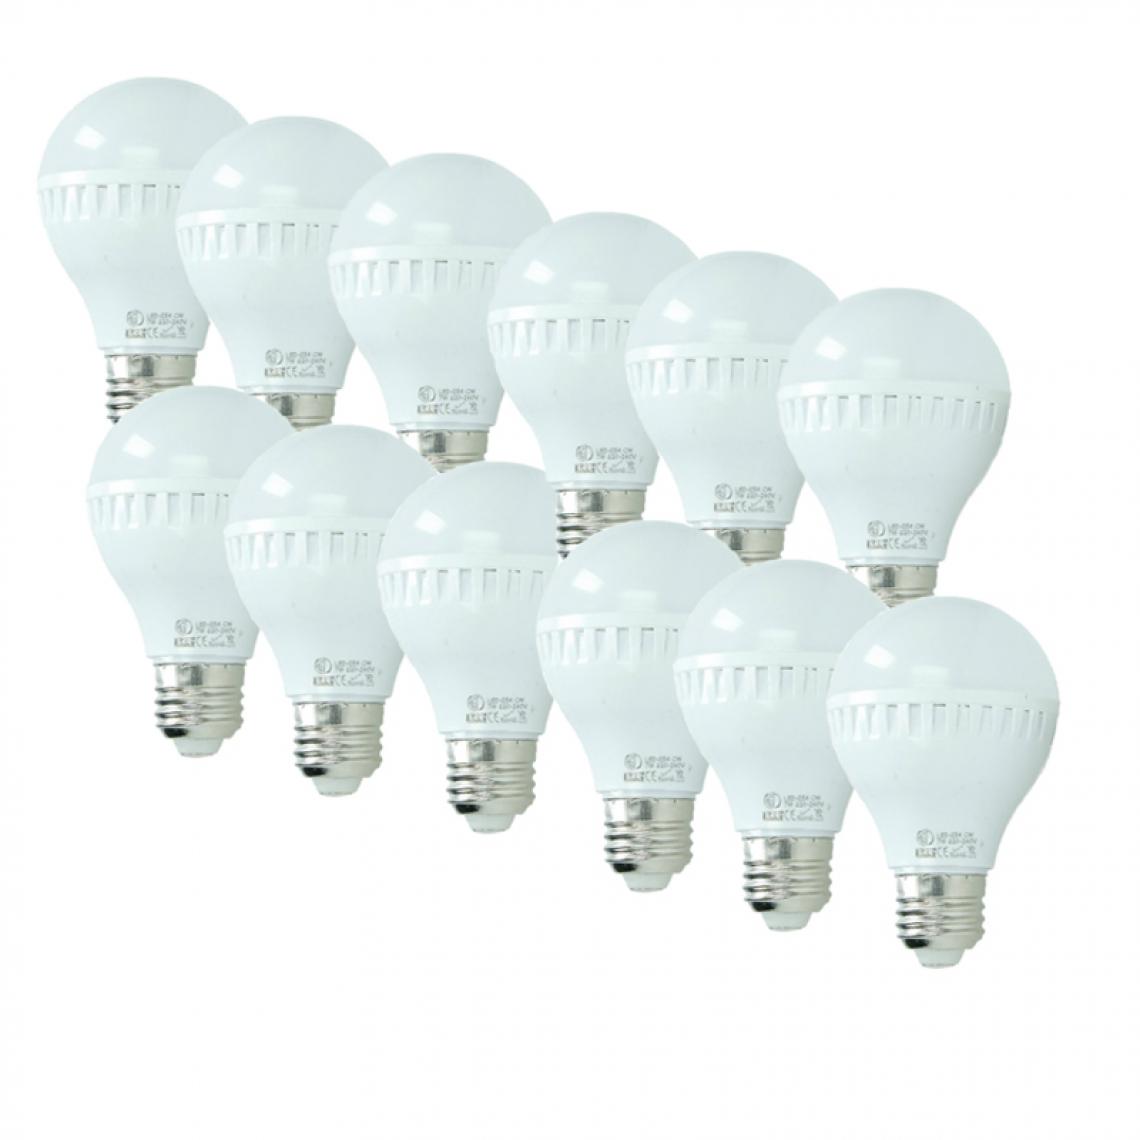 Ecd Germany - ECD Germany 12 x 7W E27 LED Lampe | 6000 Kelvin Blanc Froid | 458 Lumens | 220-240 V | Remplace une Ampoule Halogène de 45 W | Ampoules à Économie d'Énergie - Ampoules LED